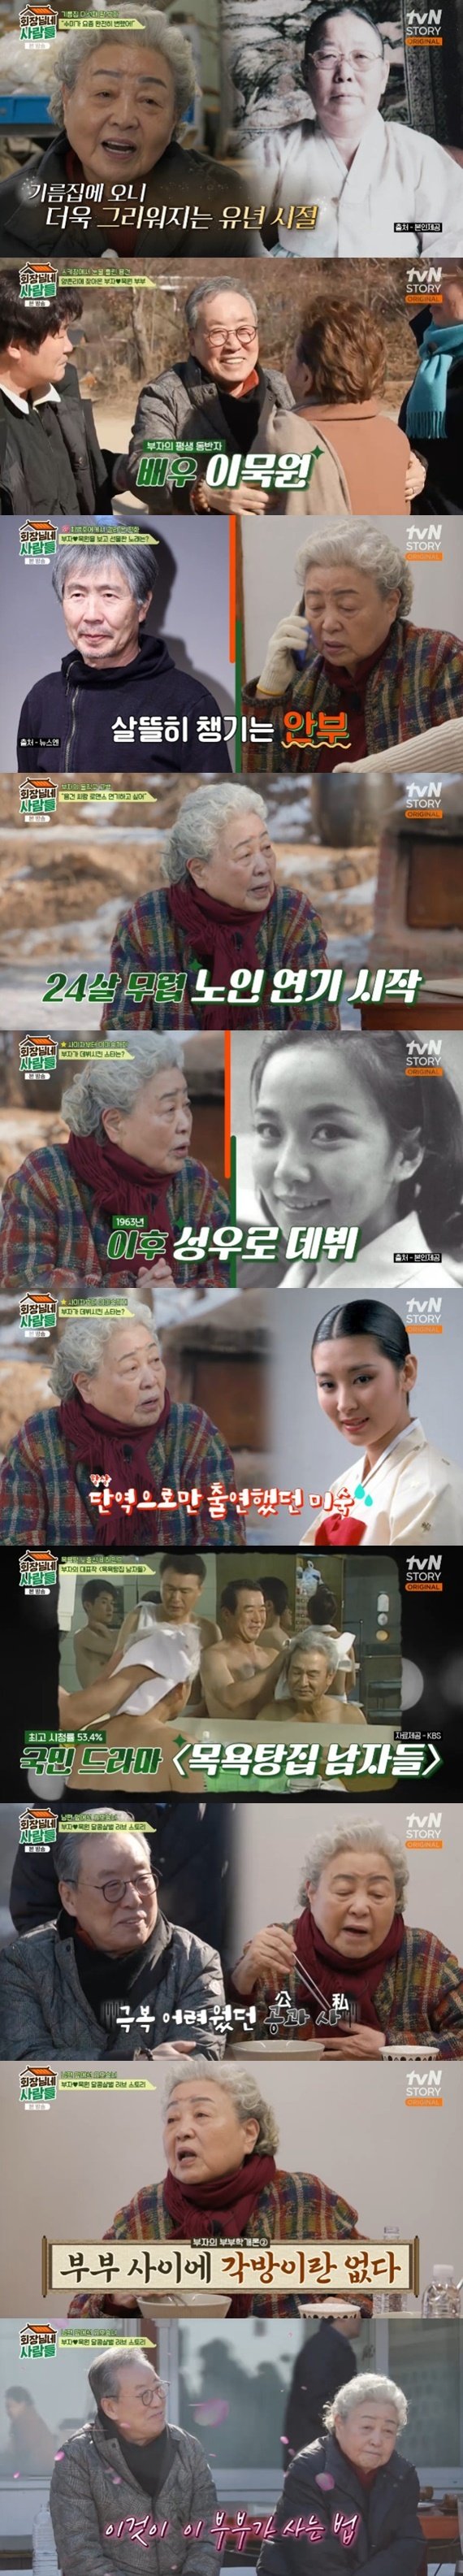 강부자♥이묵원, '회장님네' 동반 출연…62년 연기 인생 회고 [RE:TV]